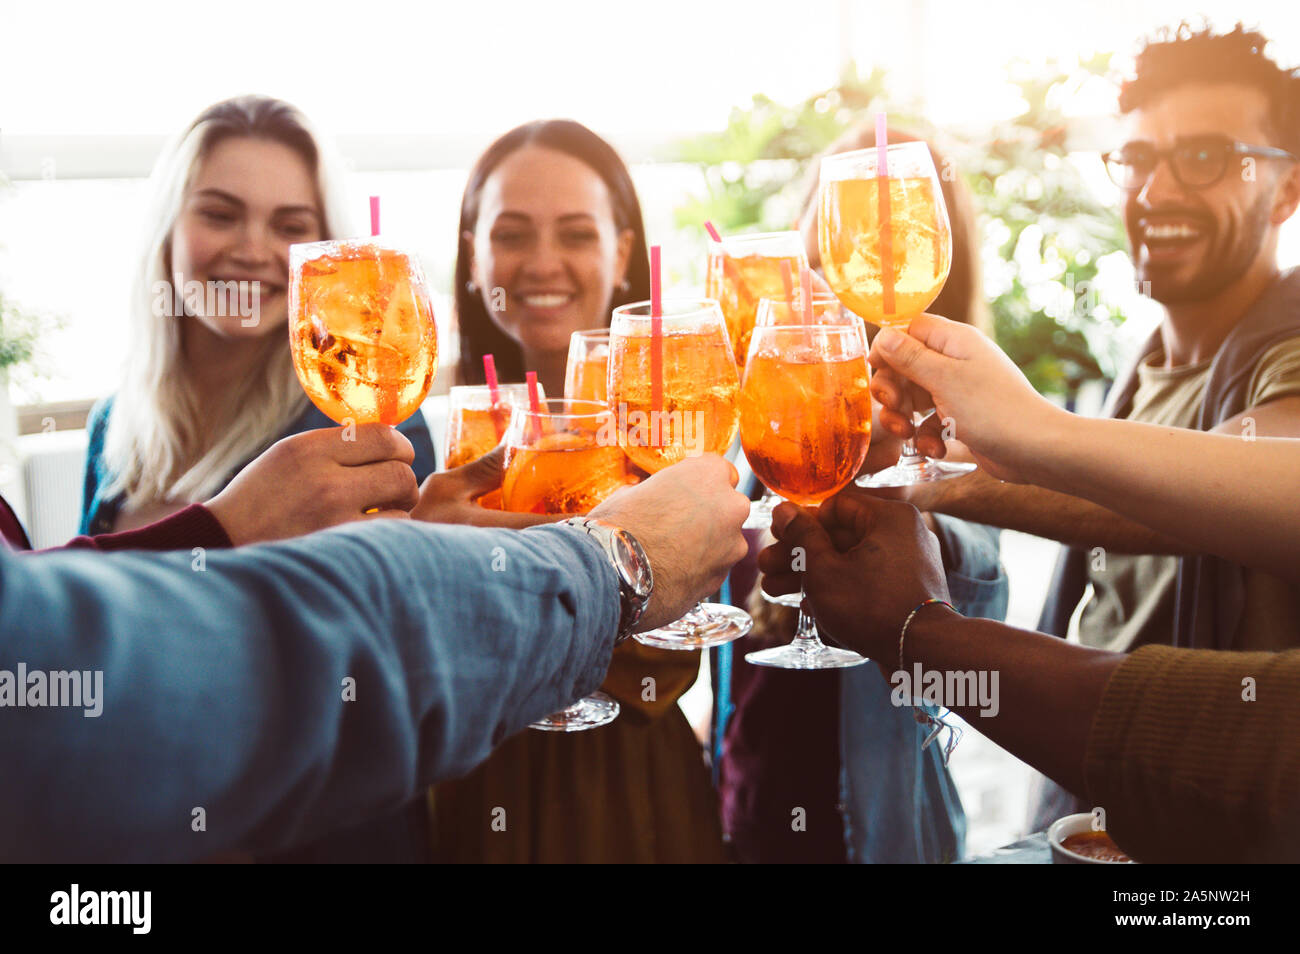 Groupe d'amis heureux de boire et faire griller les amis dans un bar restaurant - Concept de jeunes s'amusant Banque D'Images